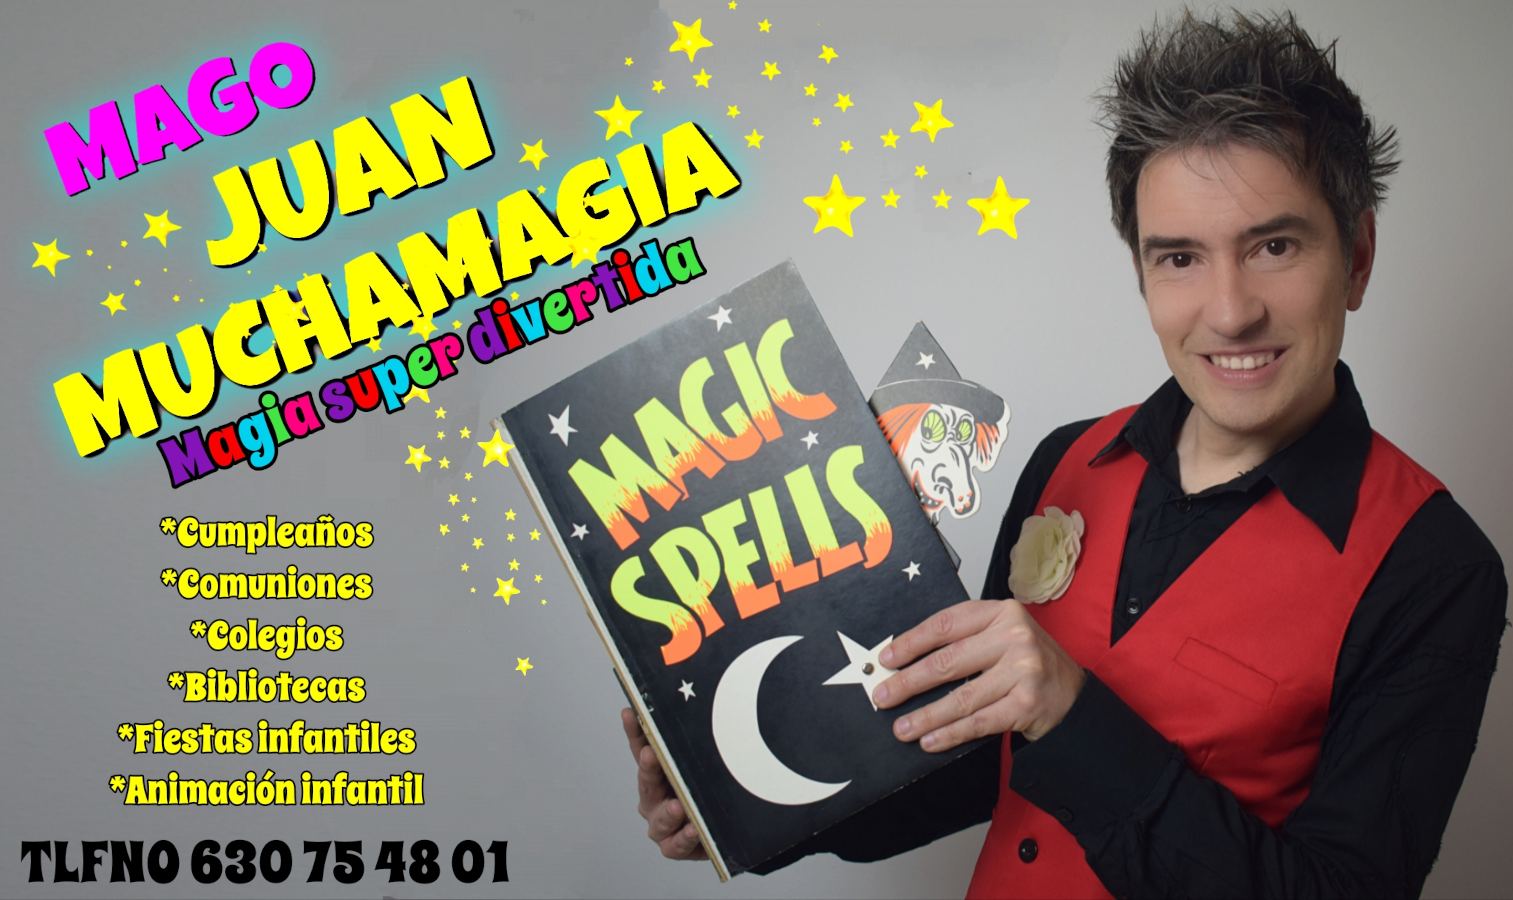 Espectáculos de magia en Albacete - Mago Albacete Juan Muchamagia